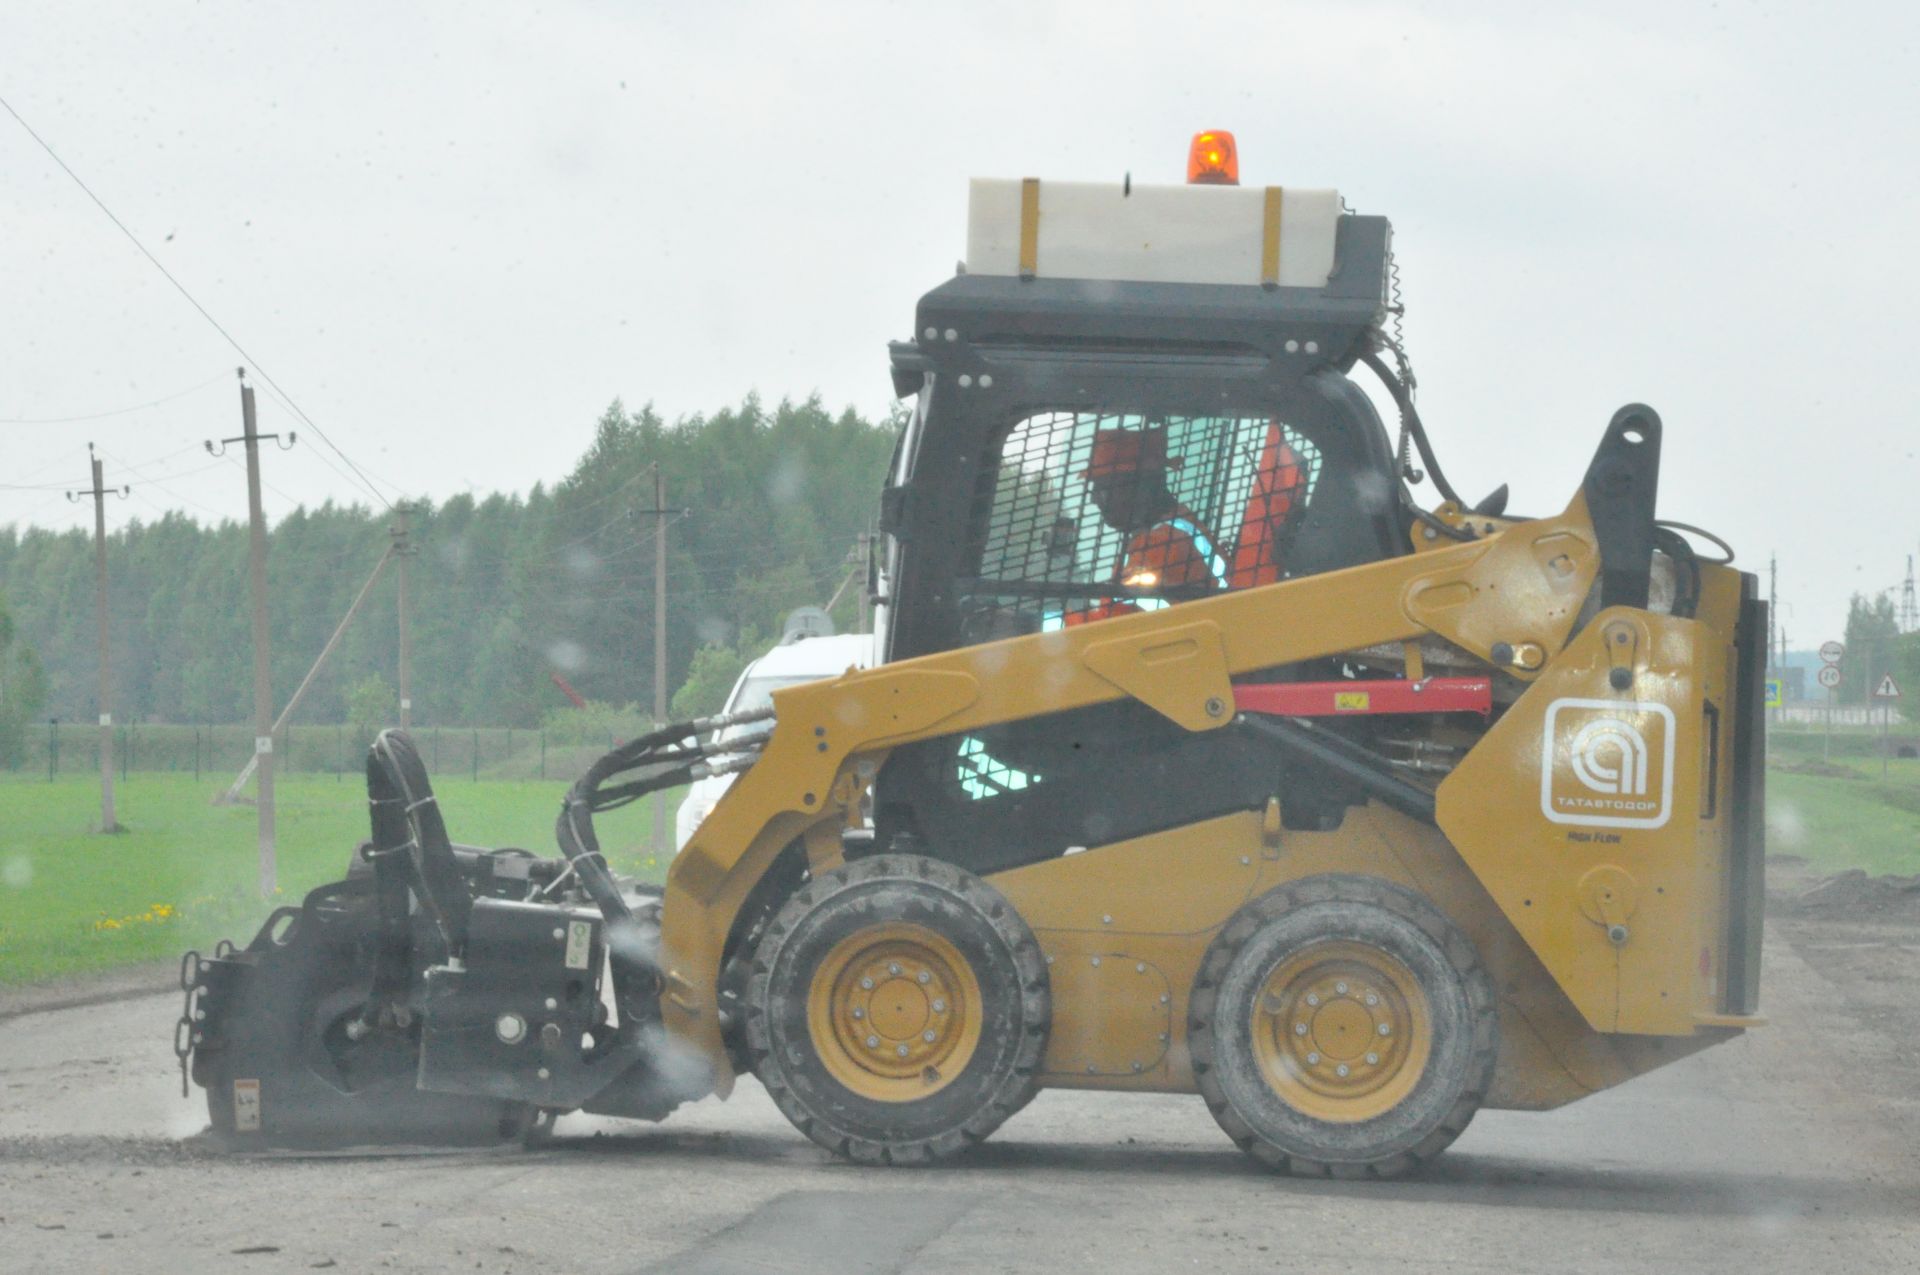 Шәмәрдән – Саба автомобиль трассасында юл ремонты